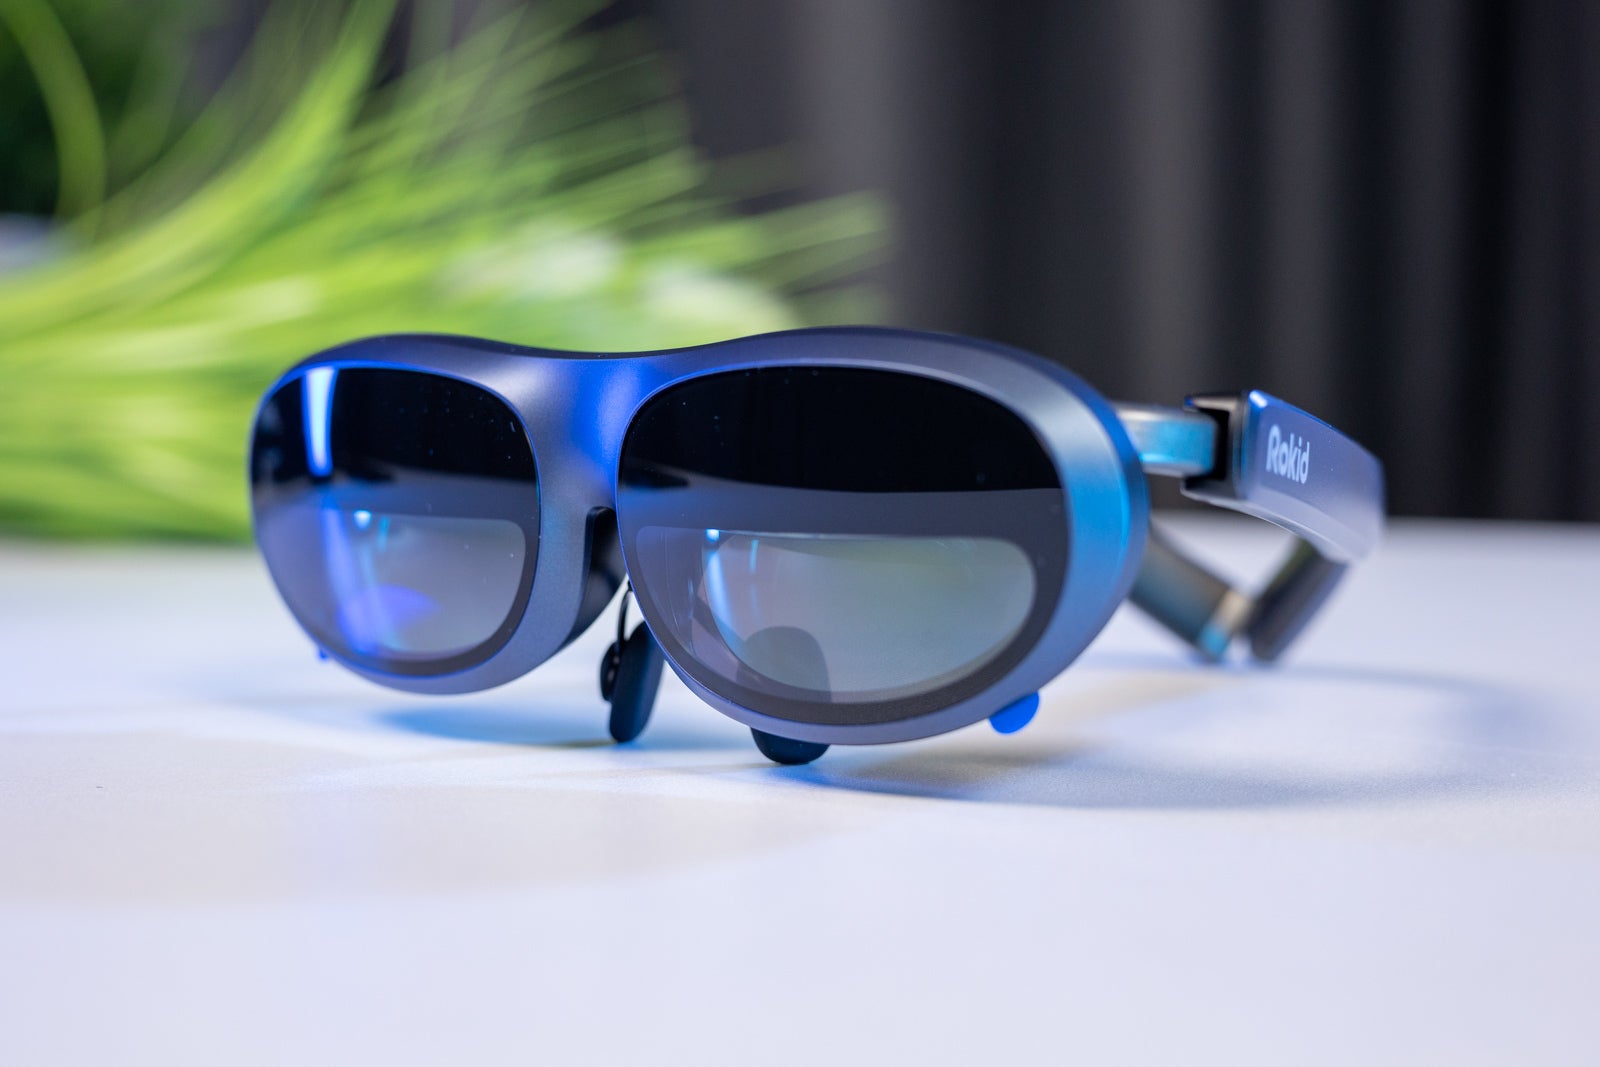 (Kredyt obrazu - Phonearena) Rokid Max - Rokid Max Recenzja: Imponujący ekran i dźwięk, wszystko w kształcie okularów przeciwsłonecznych